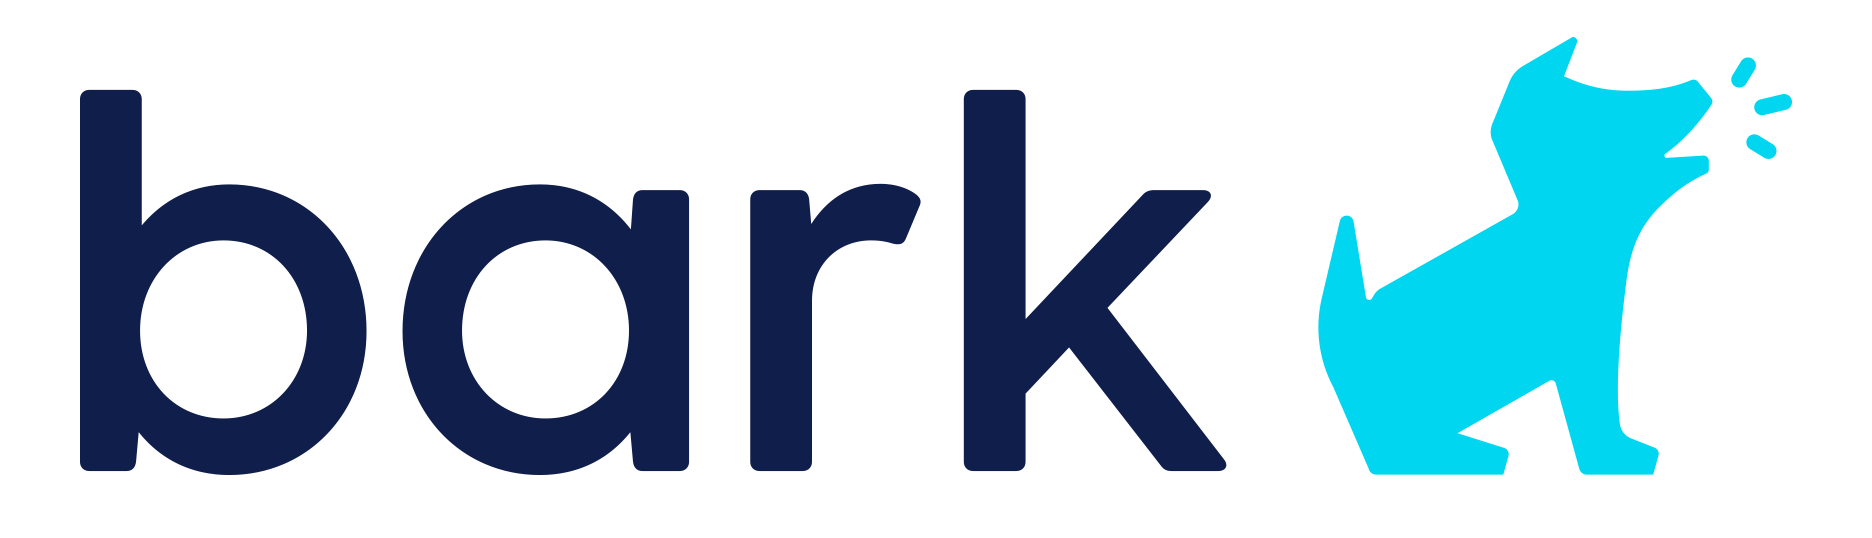 Tick Tock Logo Transparent - Galaxy Tik Tok Logo